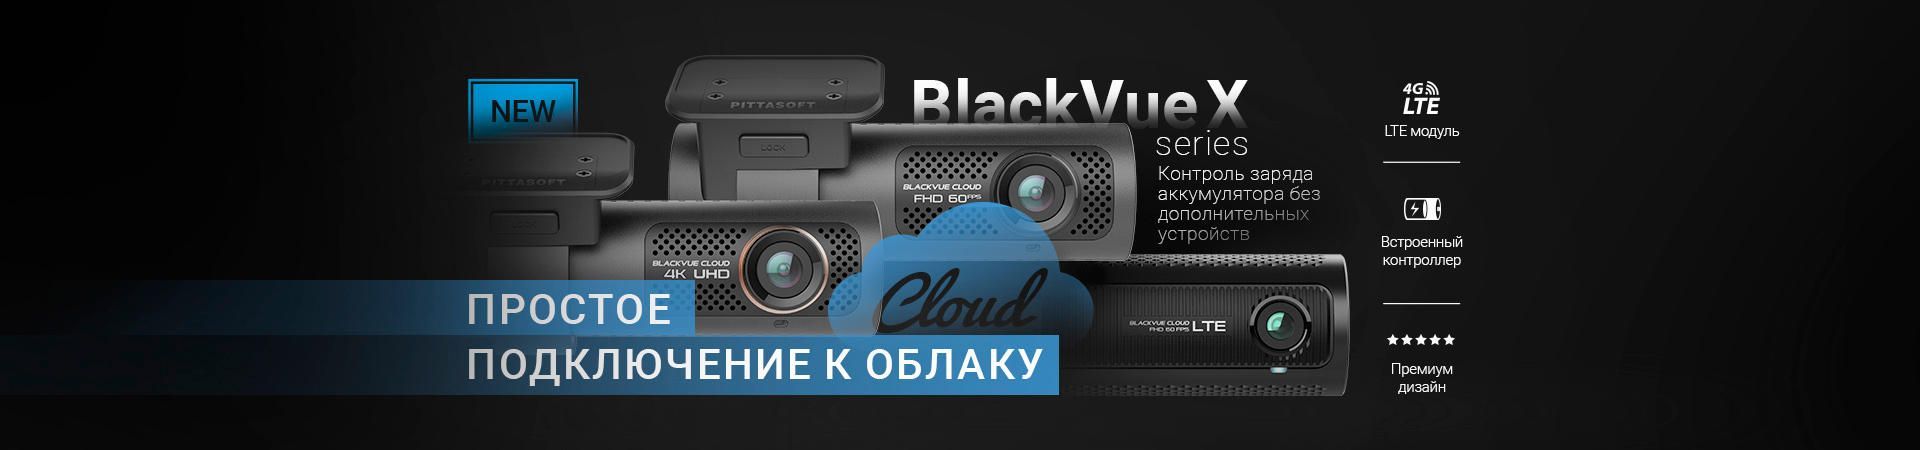 BlackVue X - новая линейка регистраторов премиум-класса!